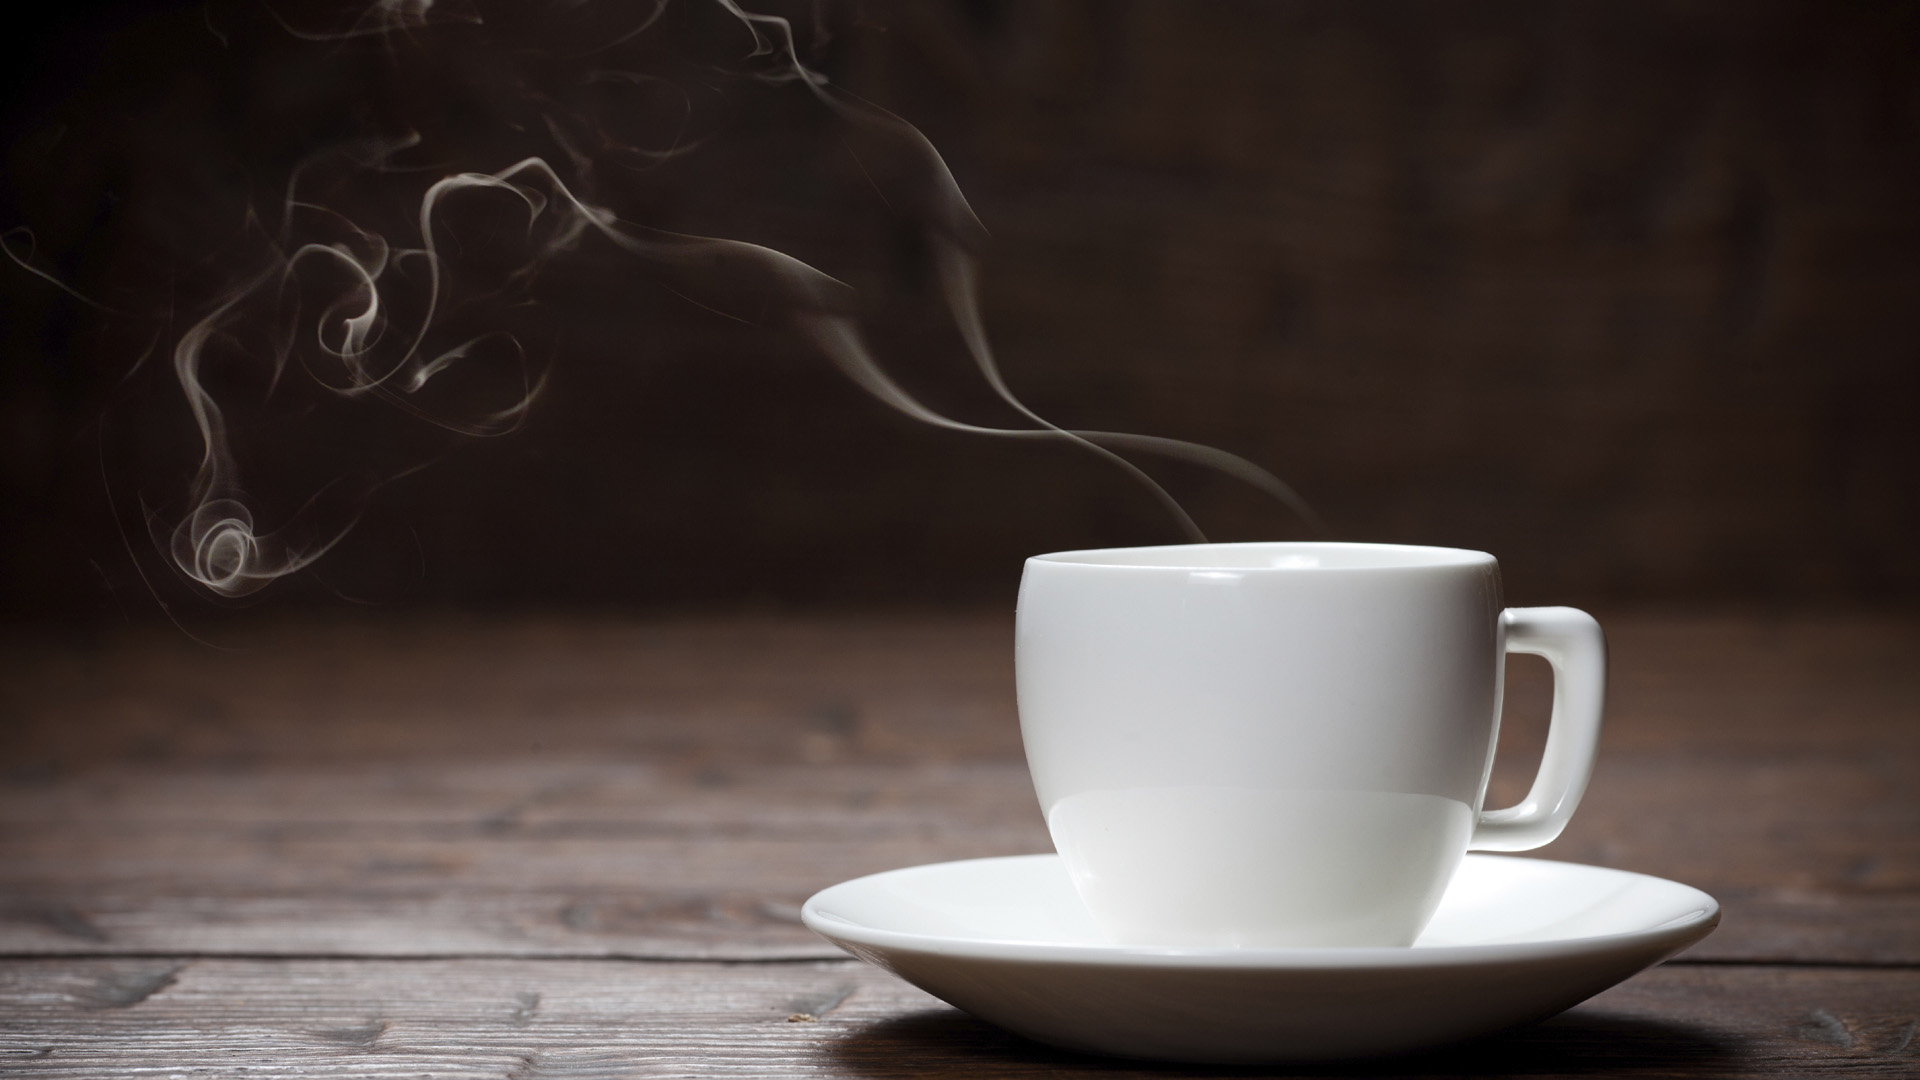 El estudio determinó que los atletas que bebían café vieron una mejora de un 24% en su fuerza